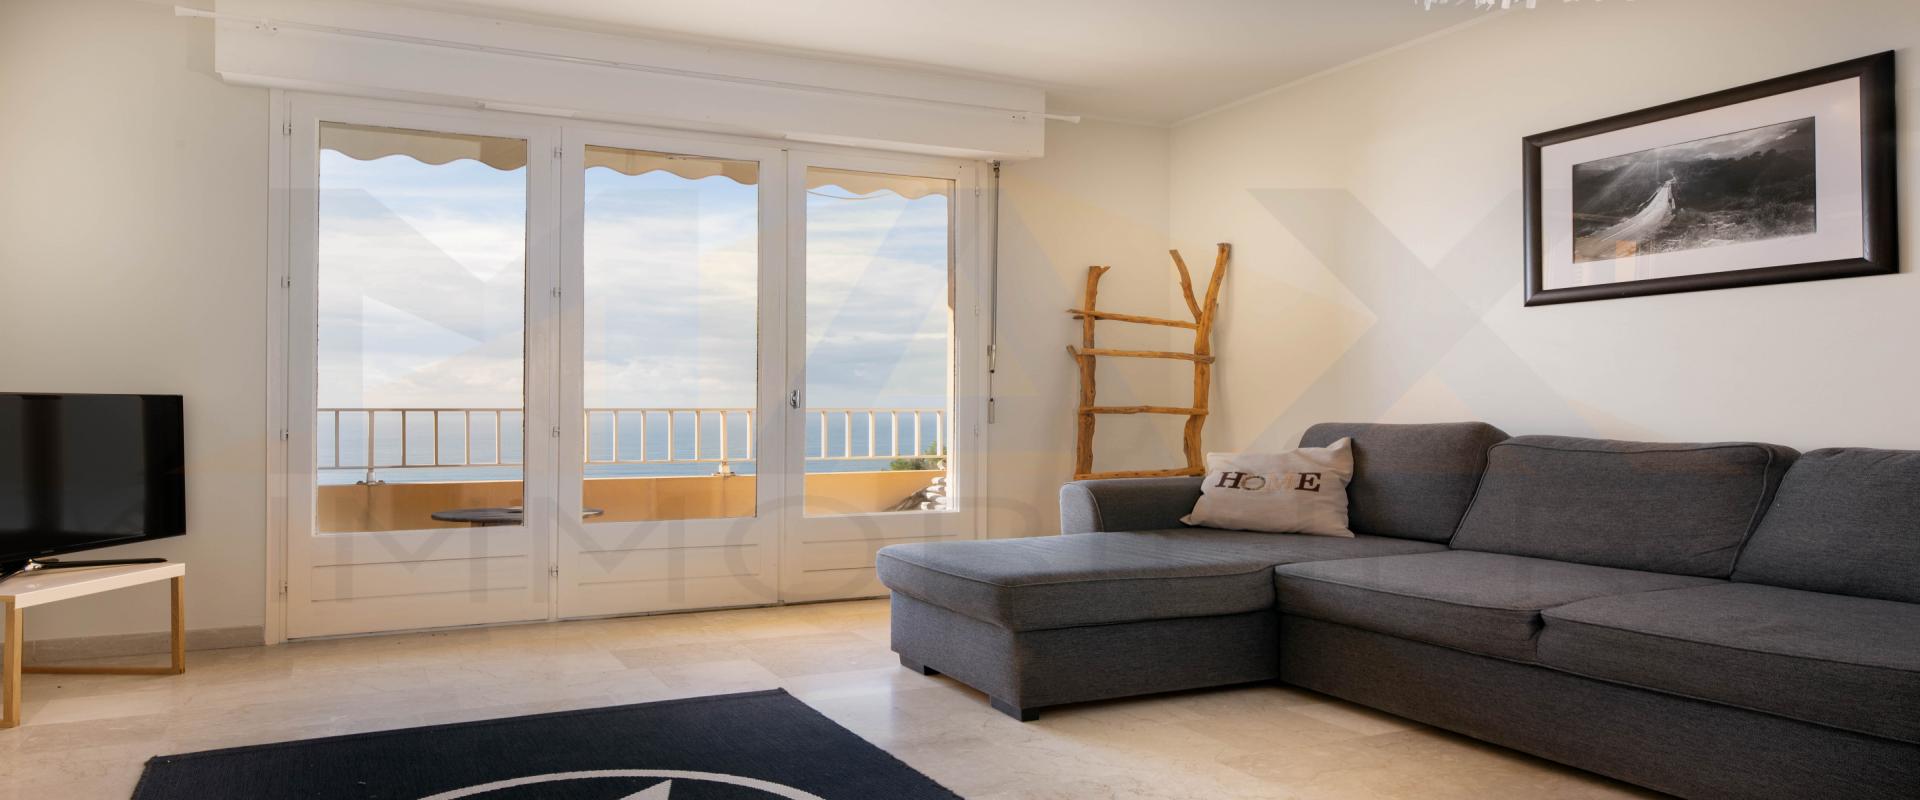 En Corse, à AJACCIO, sur la route des SANGUINAIRES, vente d'un F3 de 62 m² avec terrasse bénéficiant d'une très belle vue mer.